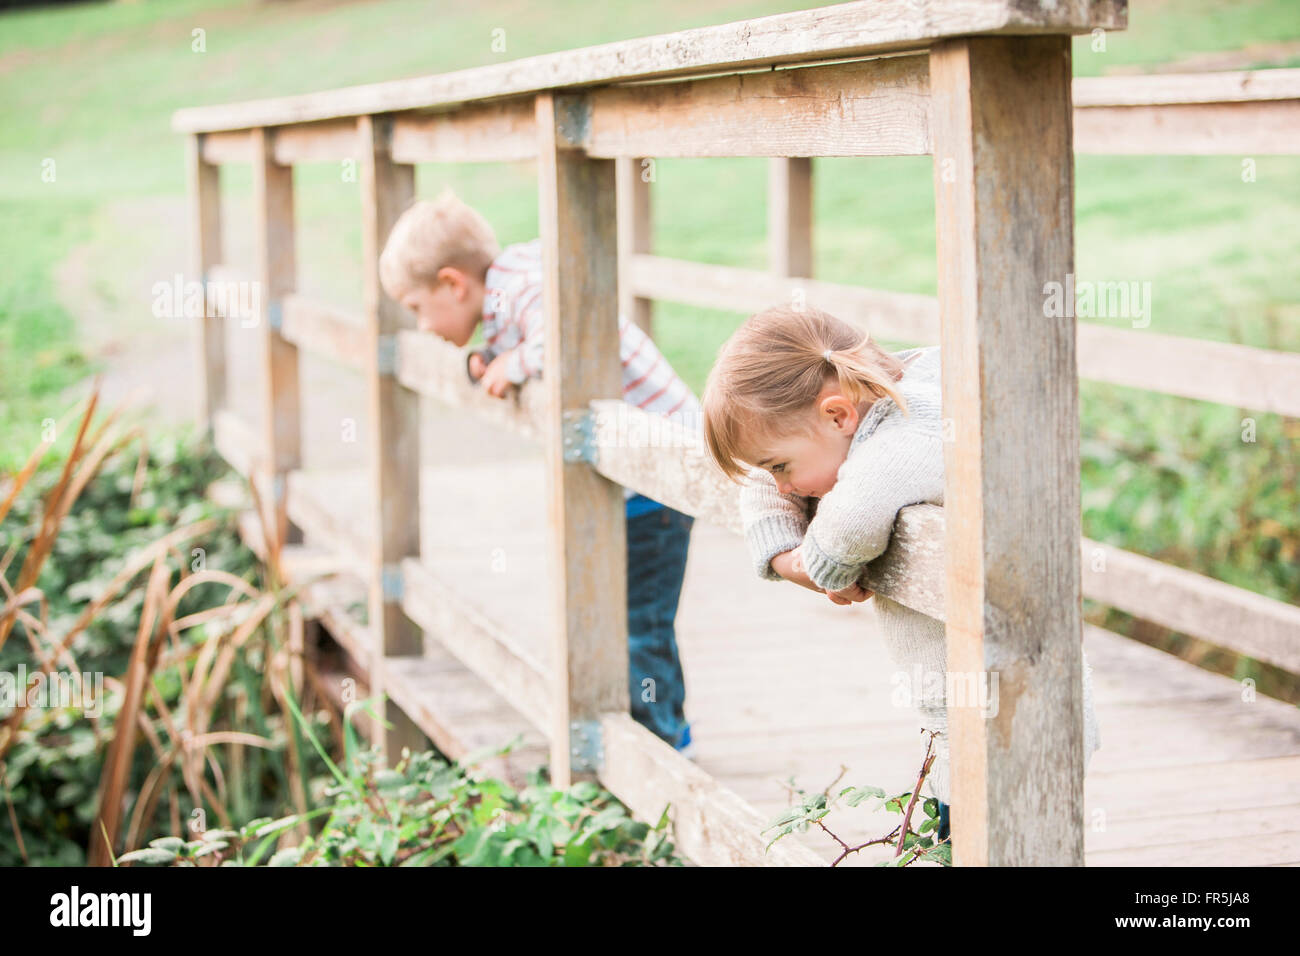 Toddler children leaning on footbridge railing in park Stock Photo